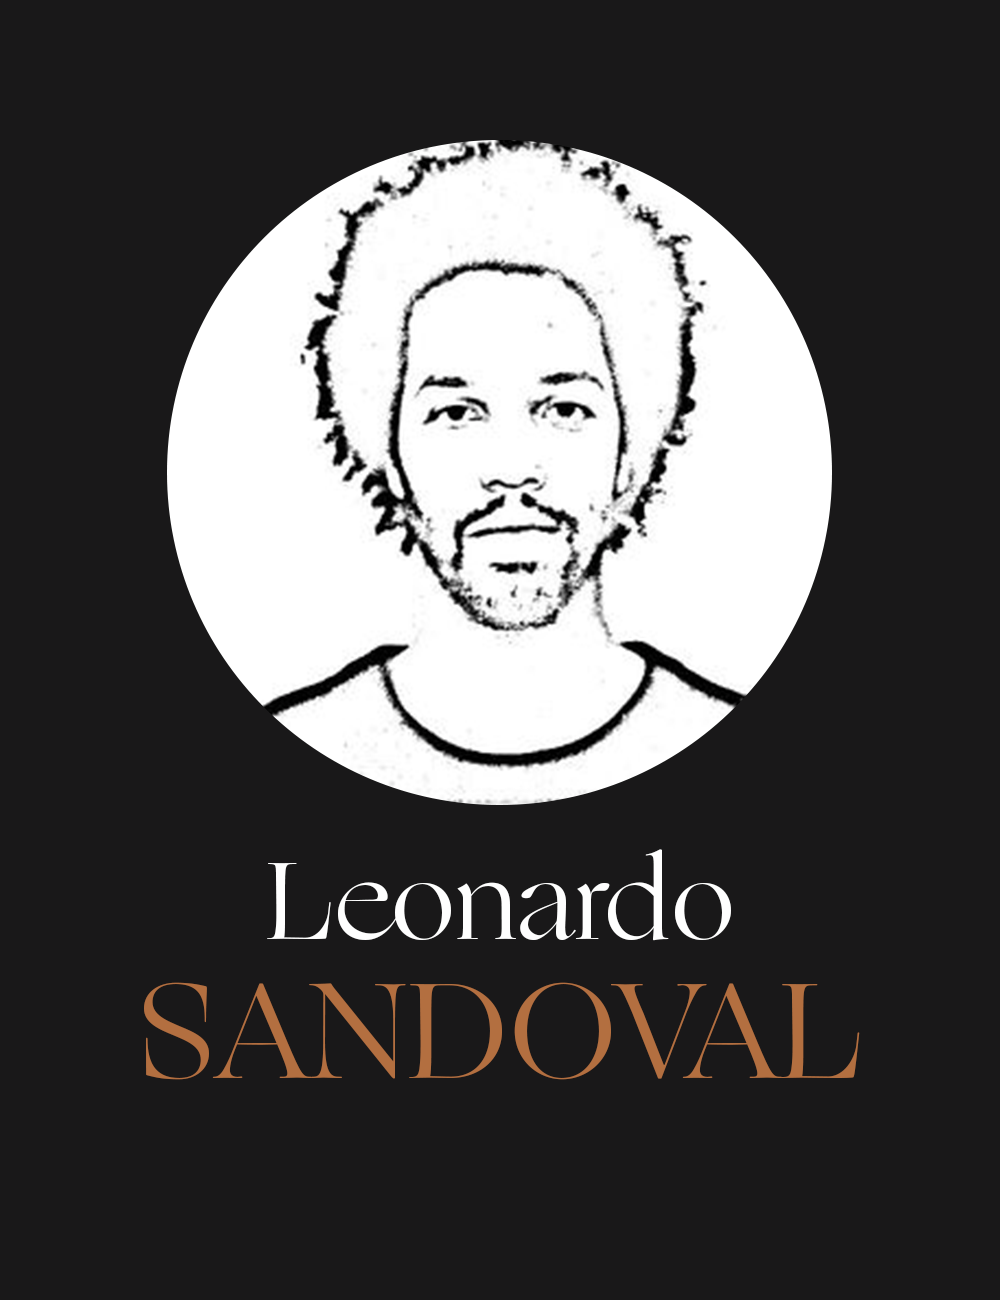 Cartaz preto com o desenho do rosto de um homem com rosto fino e cabelo crespo armado e barba rala, dentro de um círculo branco. Abaixo do círculo, o nome “Leonardo” em branco e “SANDOVAL” em bege.